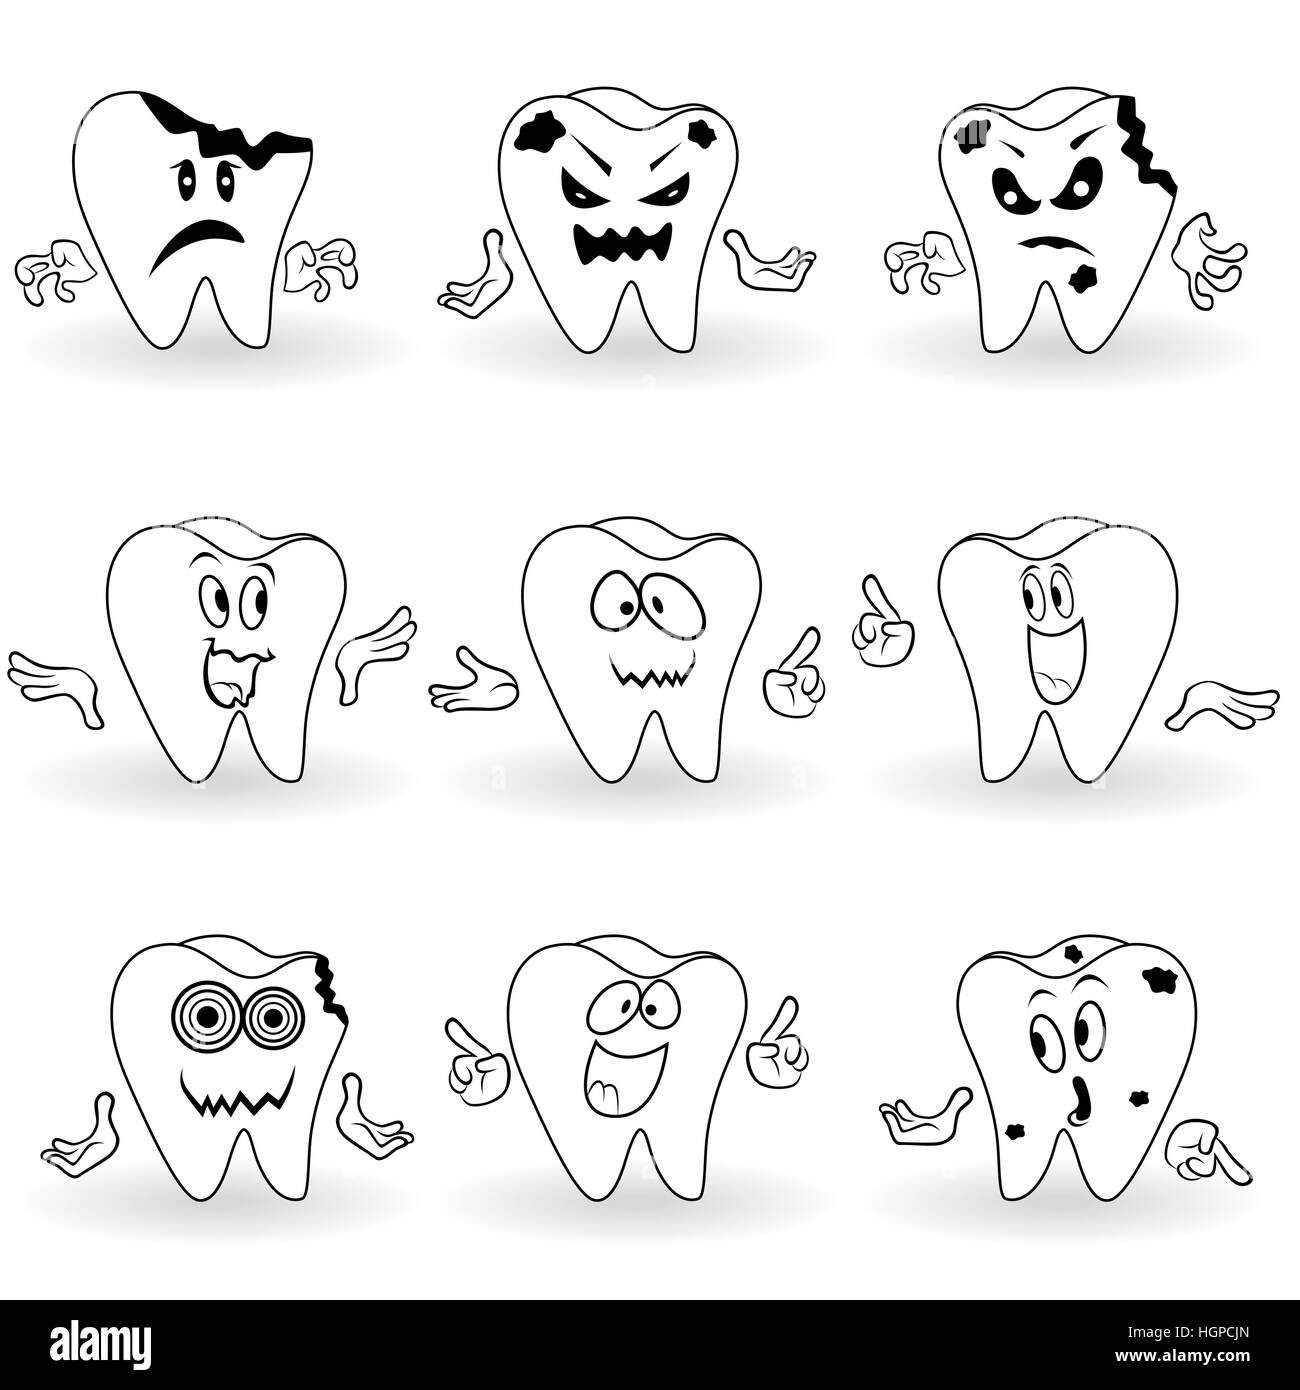 Satz von neun Zeichen der lustigen Cartoon-Zähne mit verschiedenen Gesicht Grimassen und mit Hand gestikulierend, Vektor-Illustrationen Stock Vektor